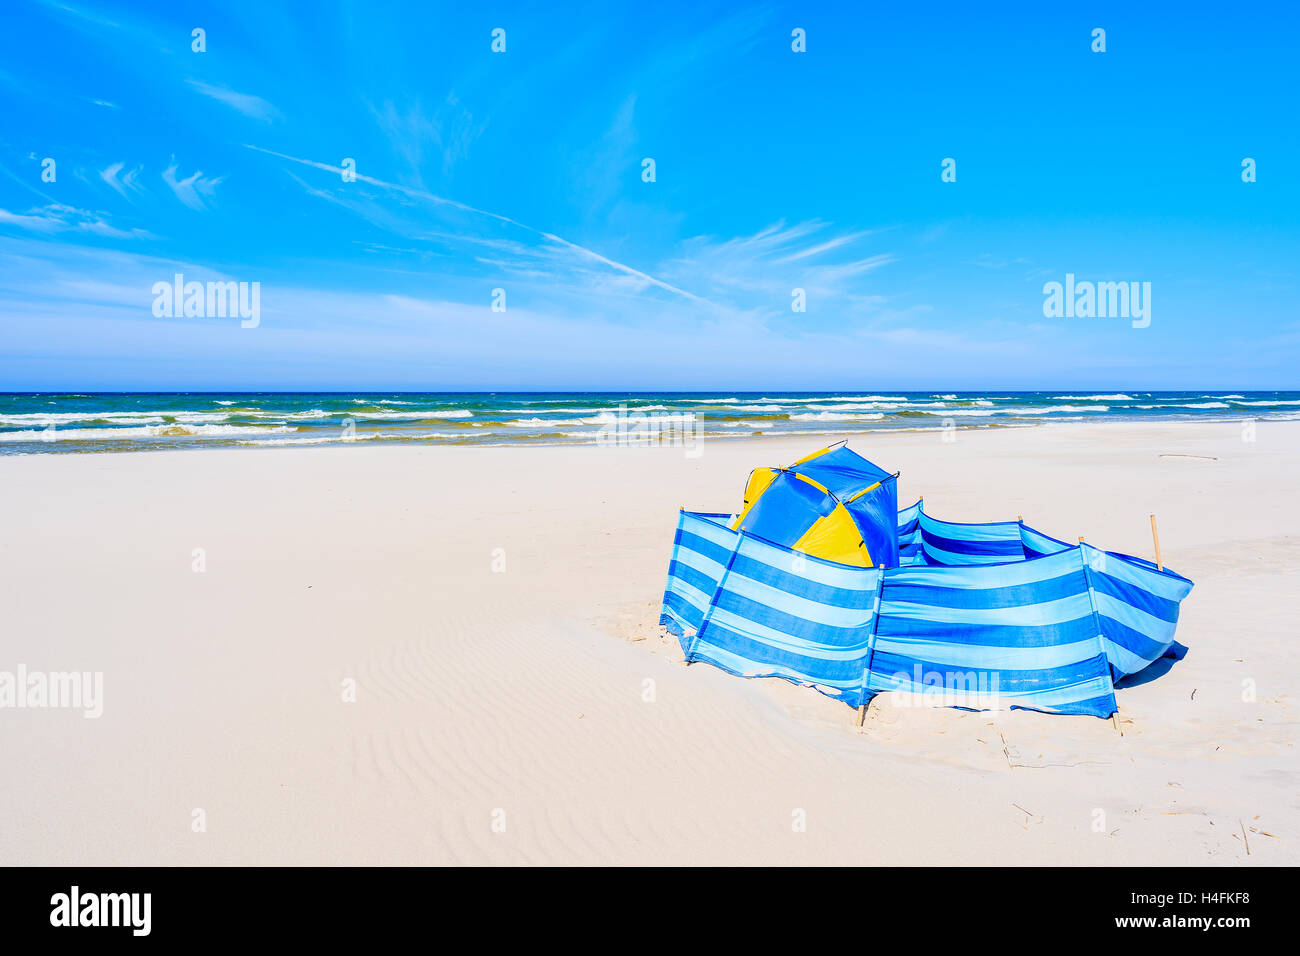 Un interruttore di vento con la tenda sulla spiaggia di sabbia bianca di Debki villaggio costiero, Mar Baltico, Polonia Foto Stock